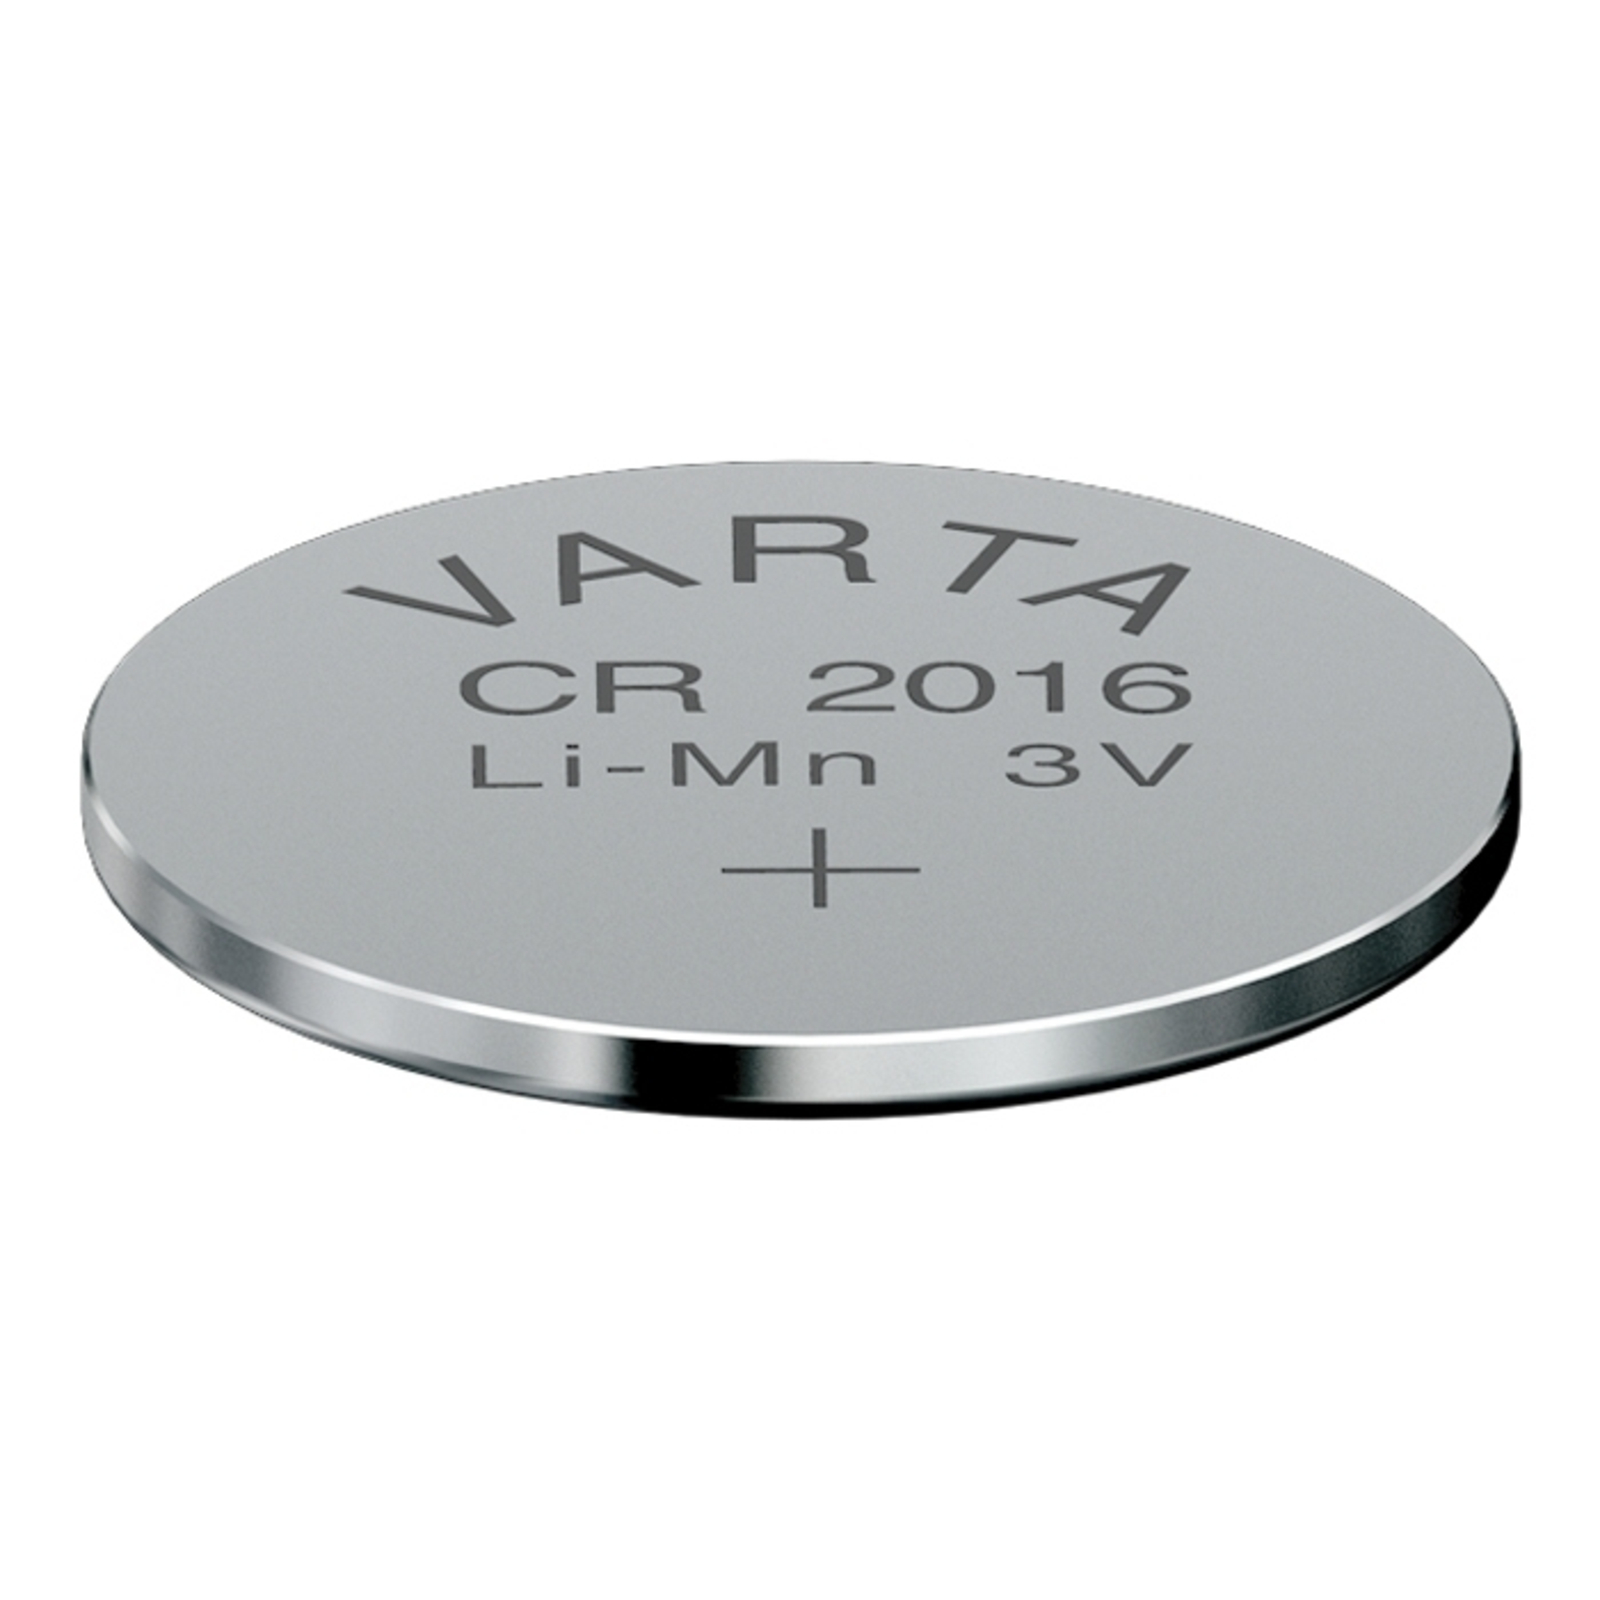 Lithium CR2016 3V knappbatteri från VARTA